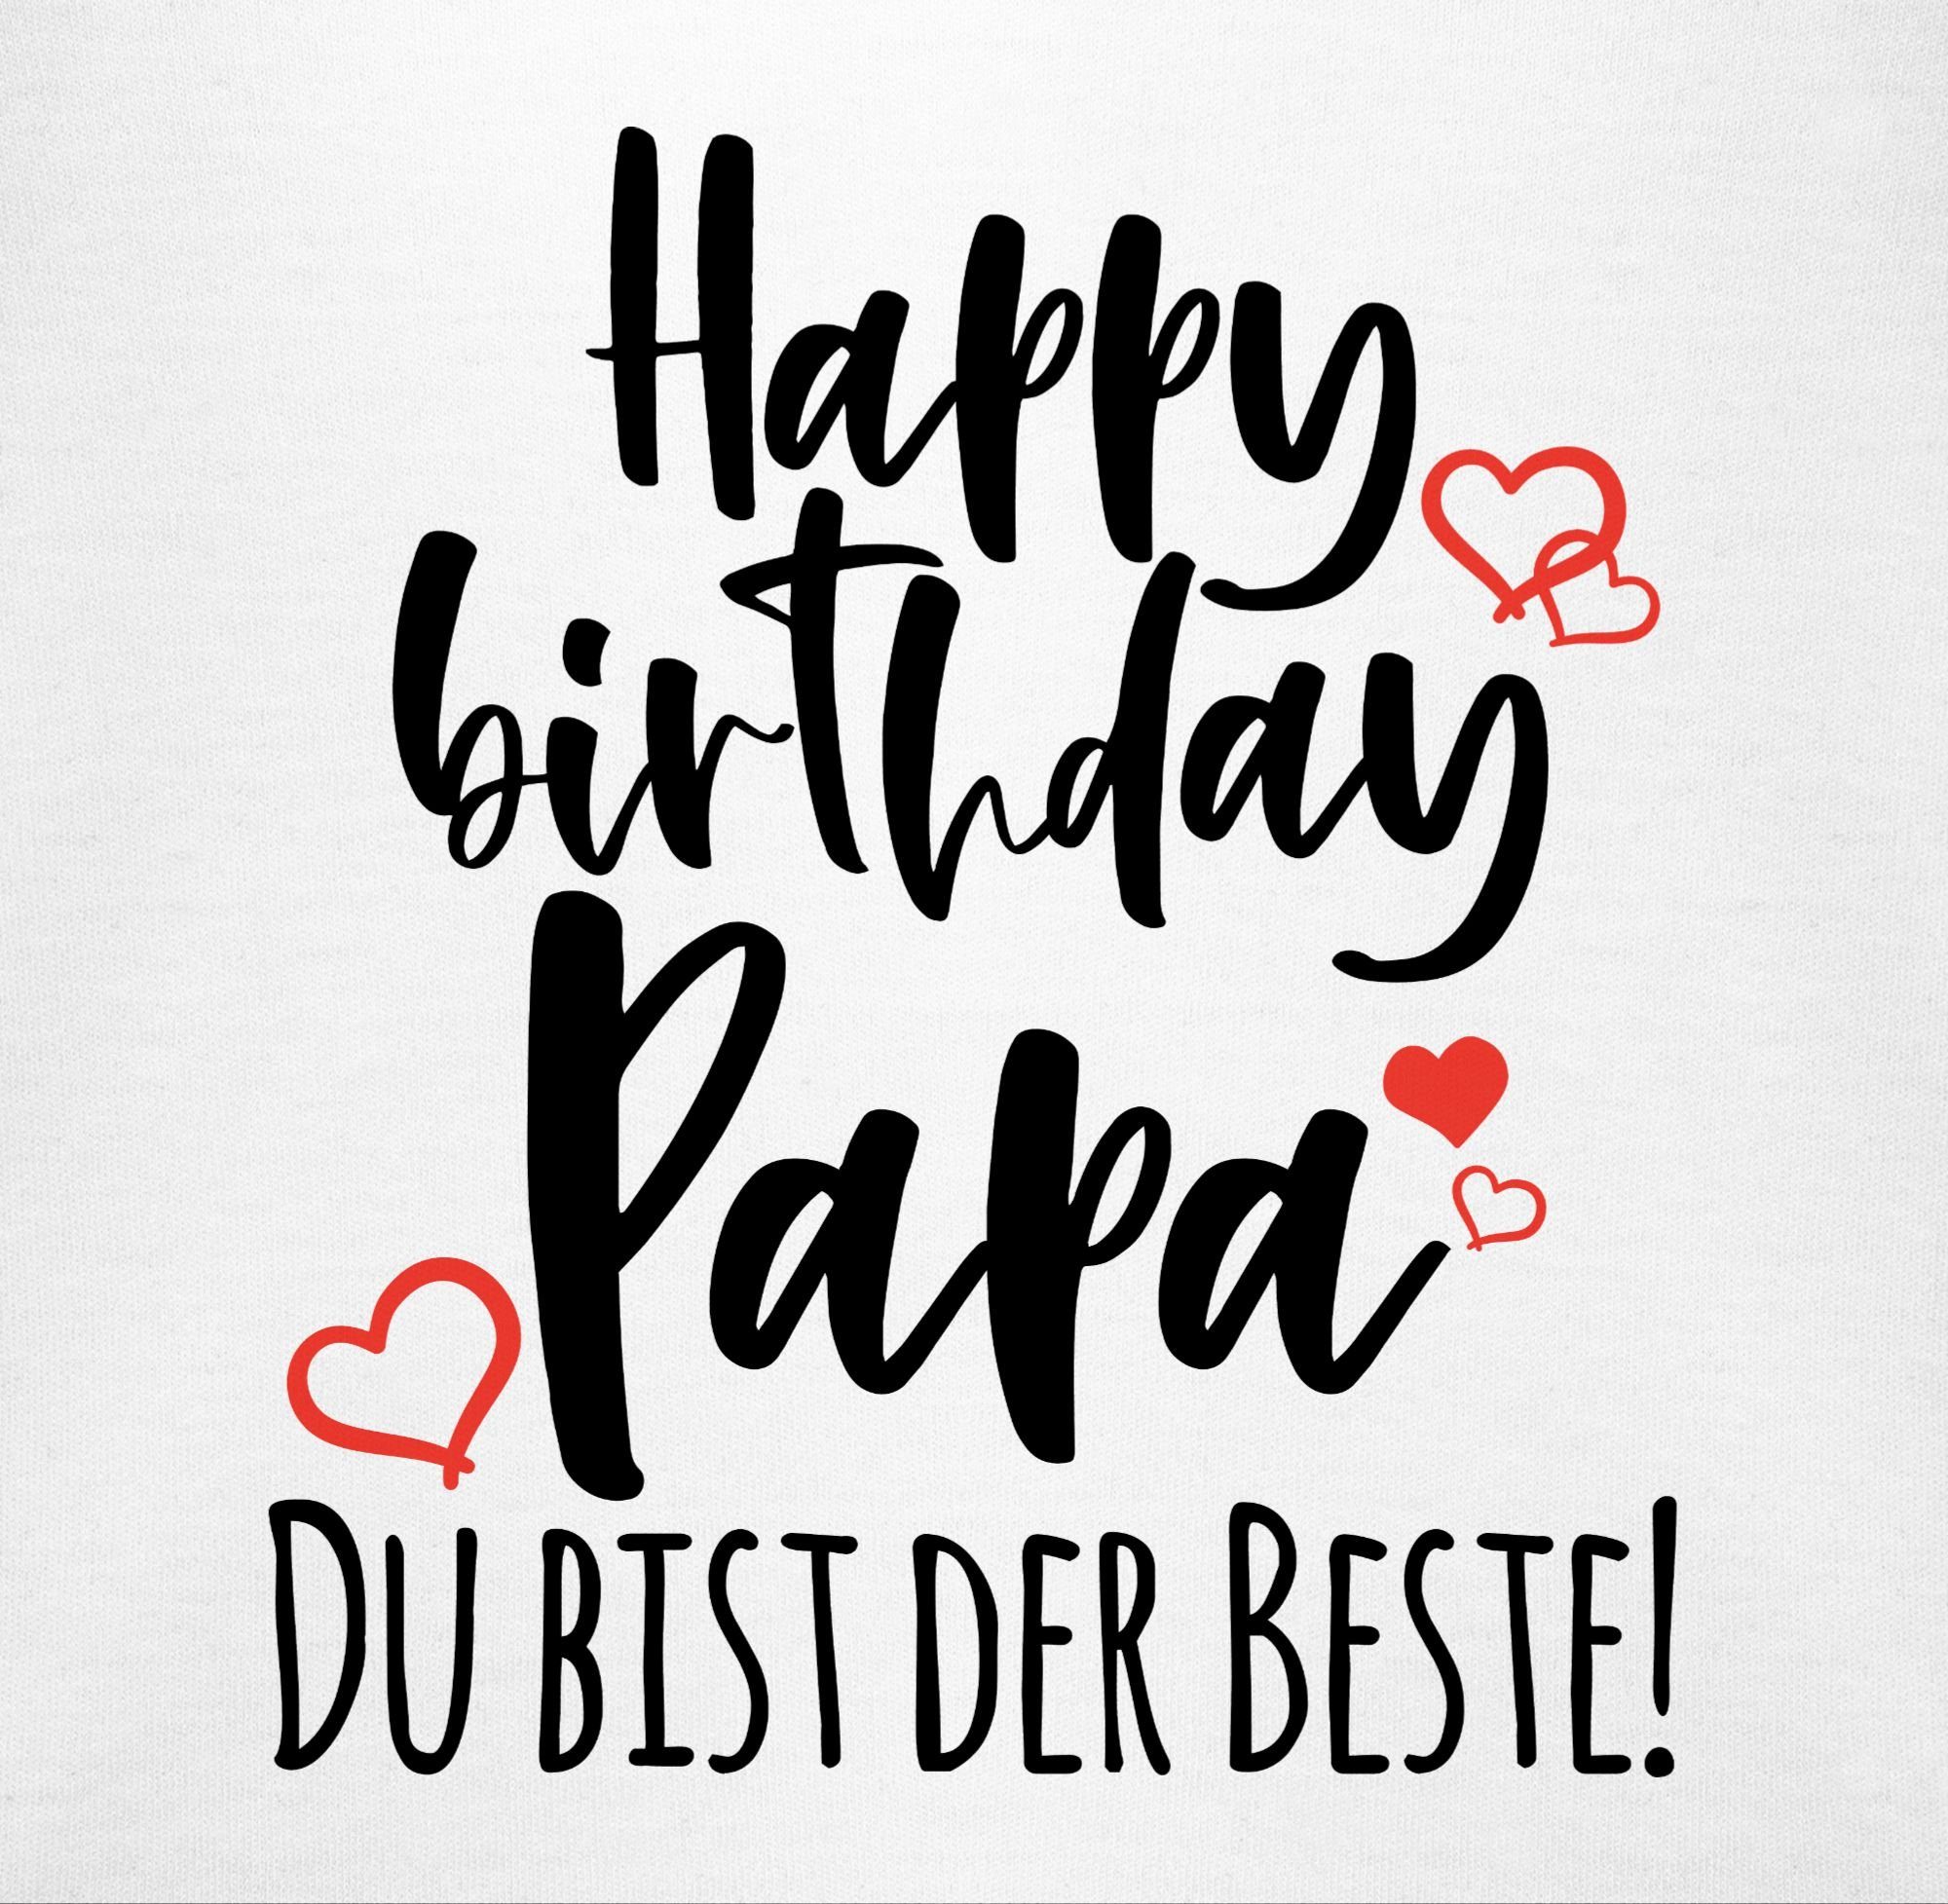 Mädchen Shirtbody Strampler Papa Happy Weiß & Birthday Junge Baby Shirtracer 1